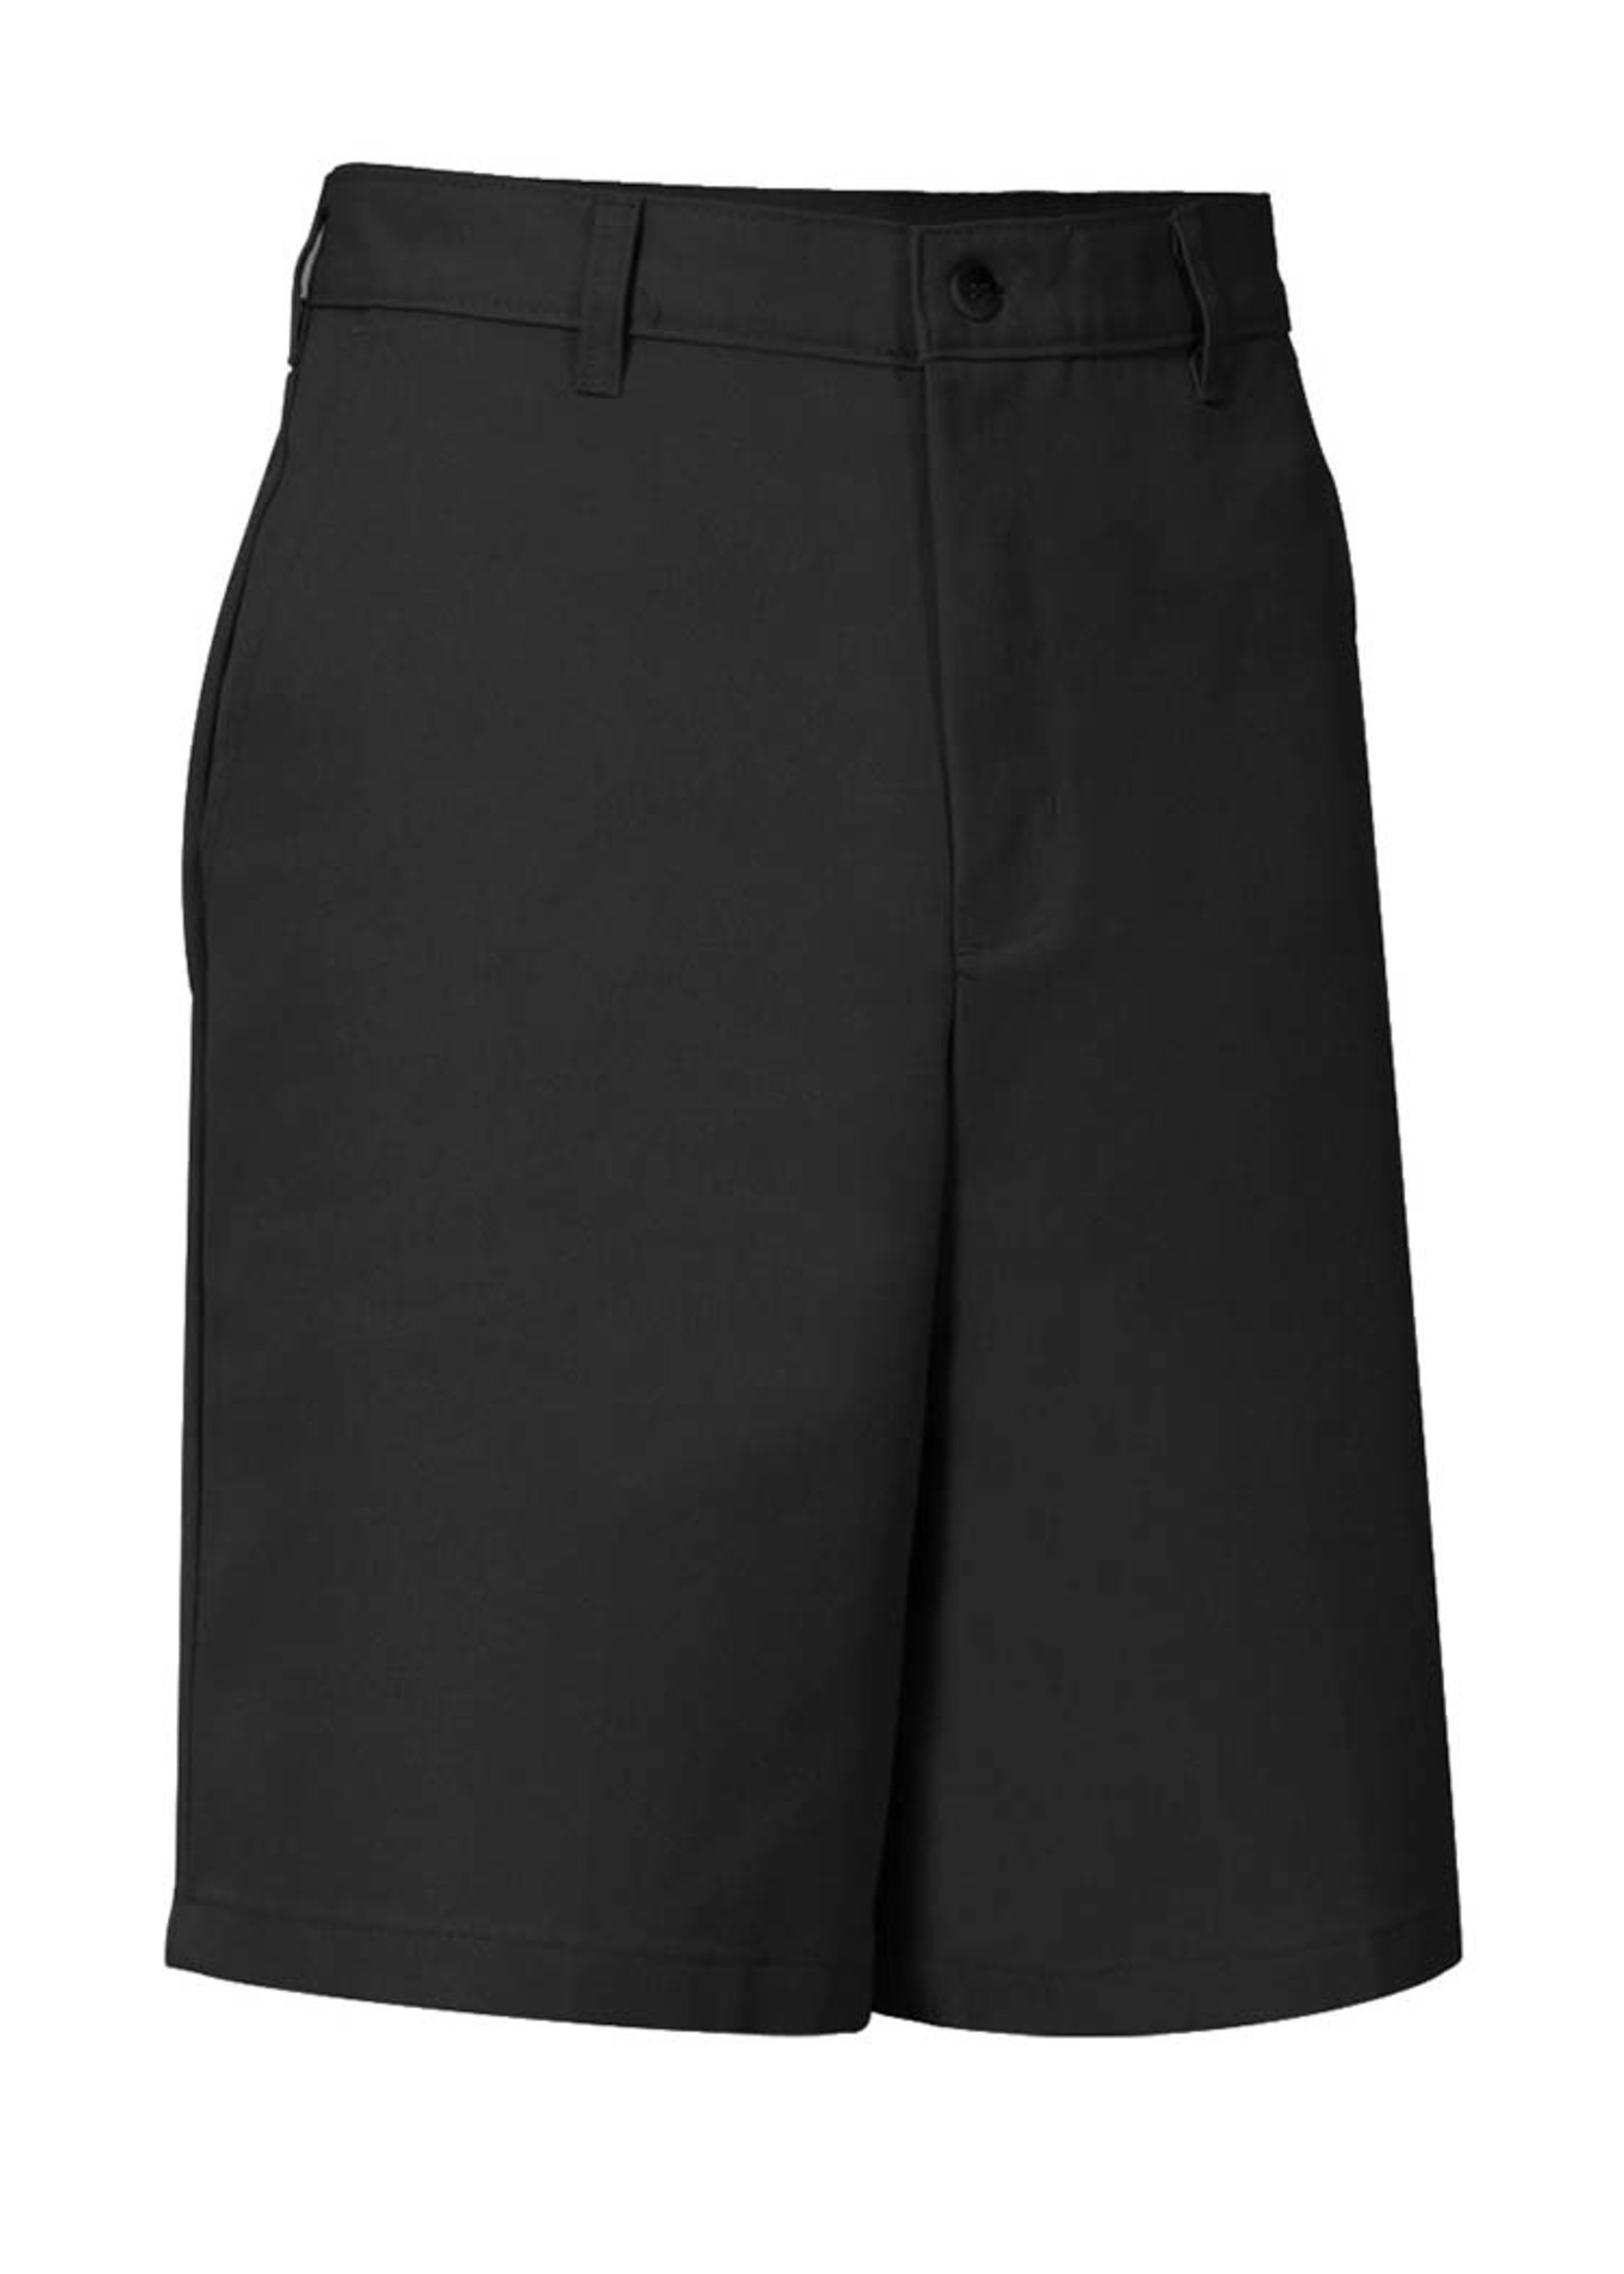 A+ Boys Black Flat Front Shorts